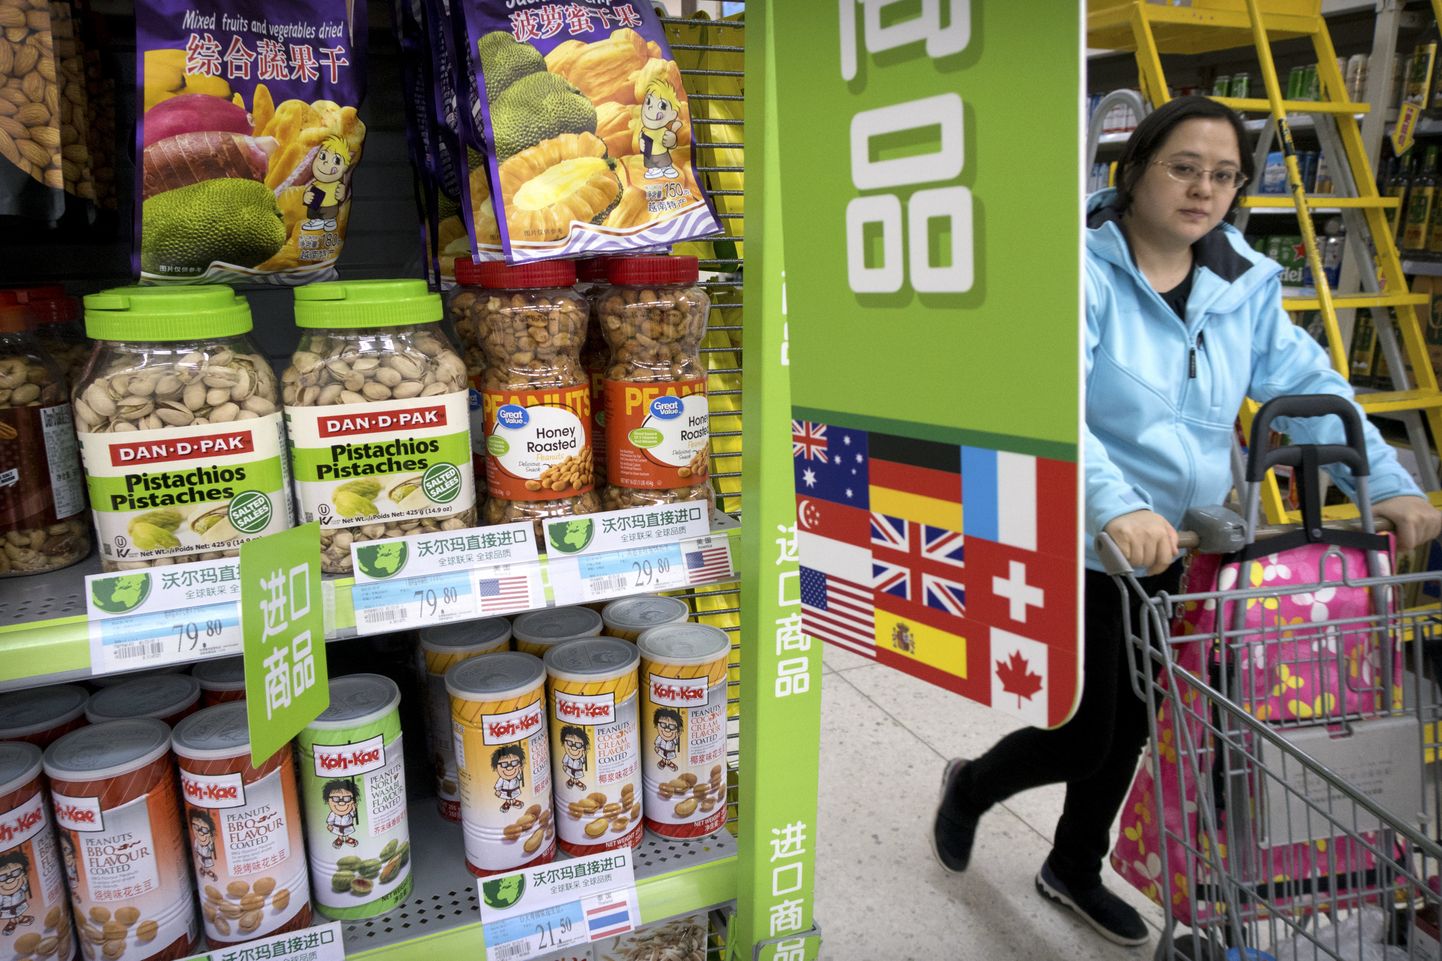 Ameerika päritolu pistaatsiapähklid (vasakul) Hiina supermarketi riiulis